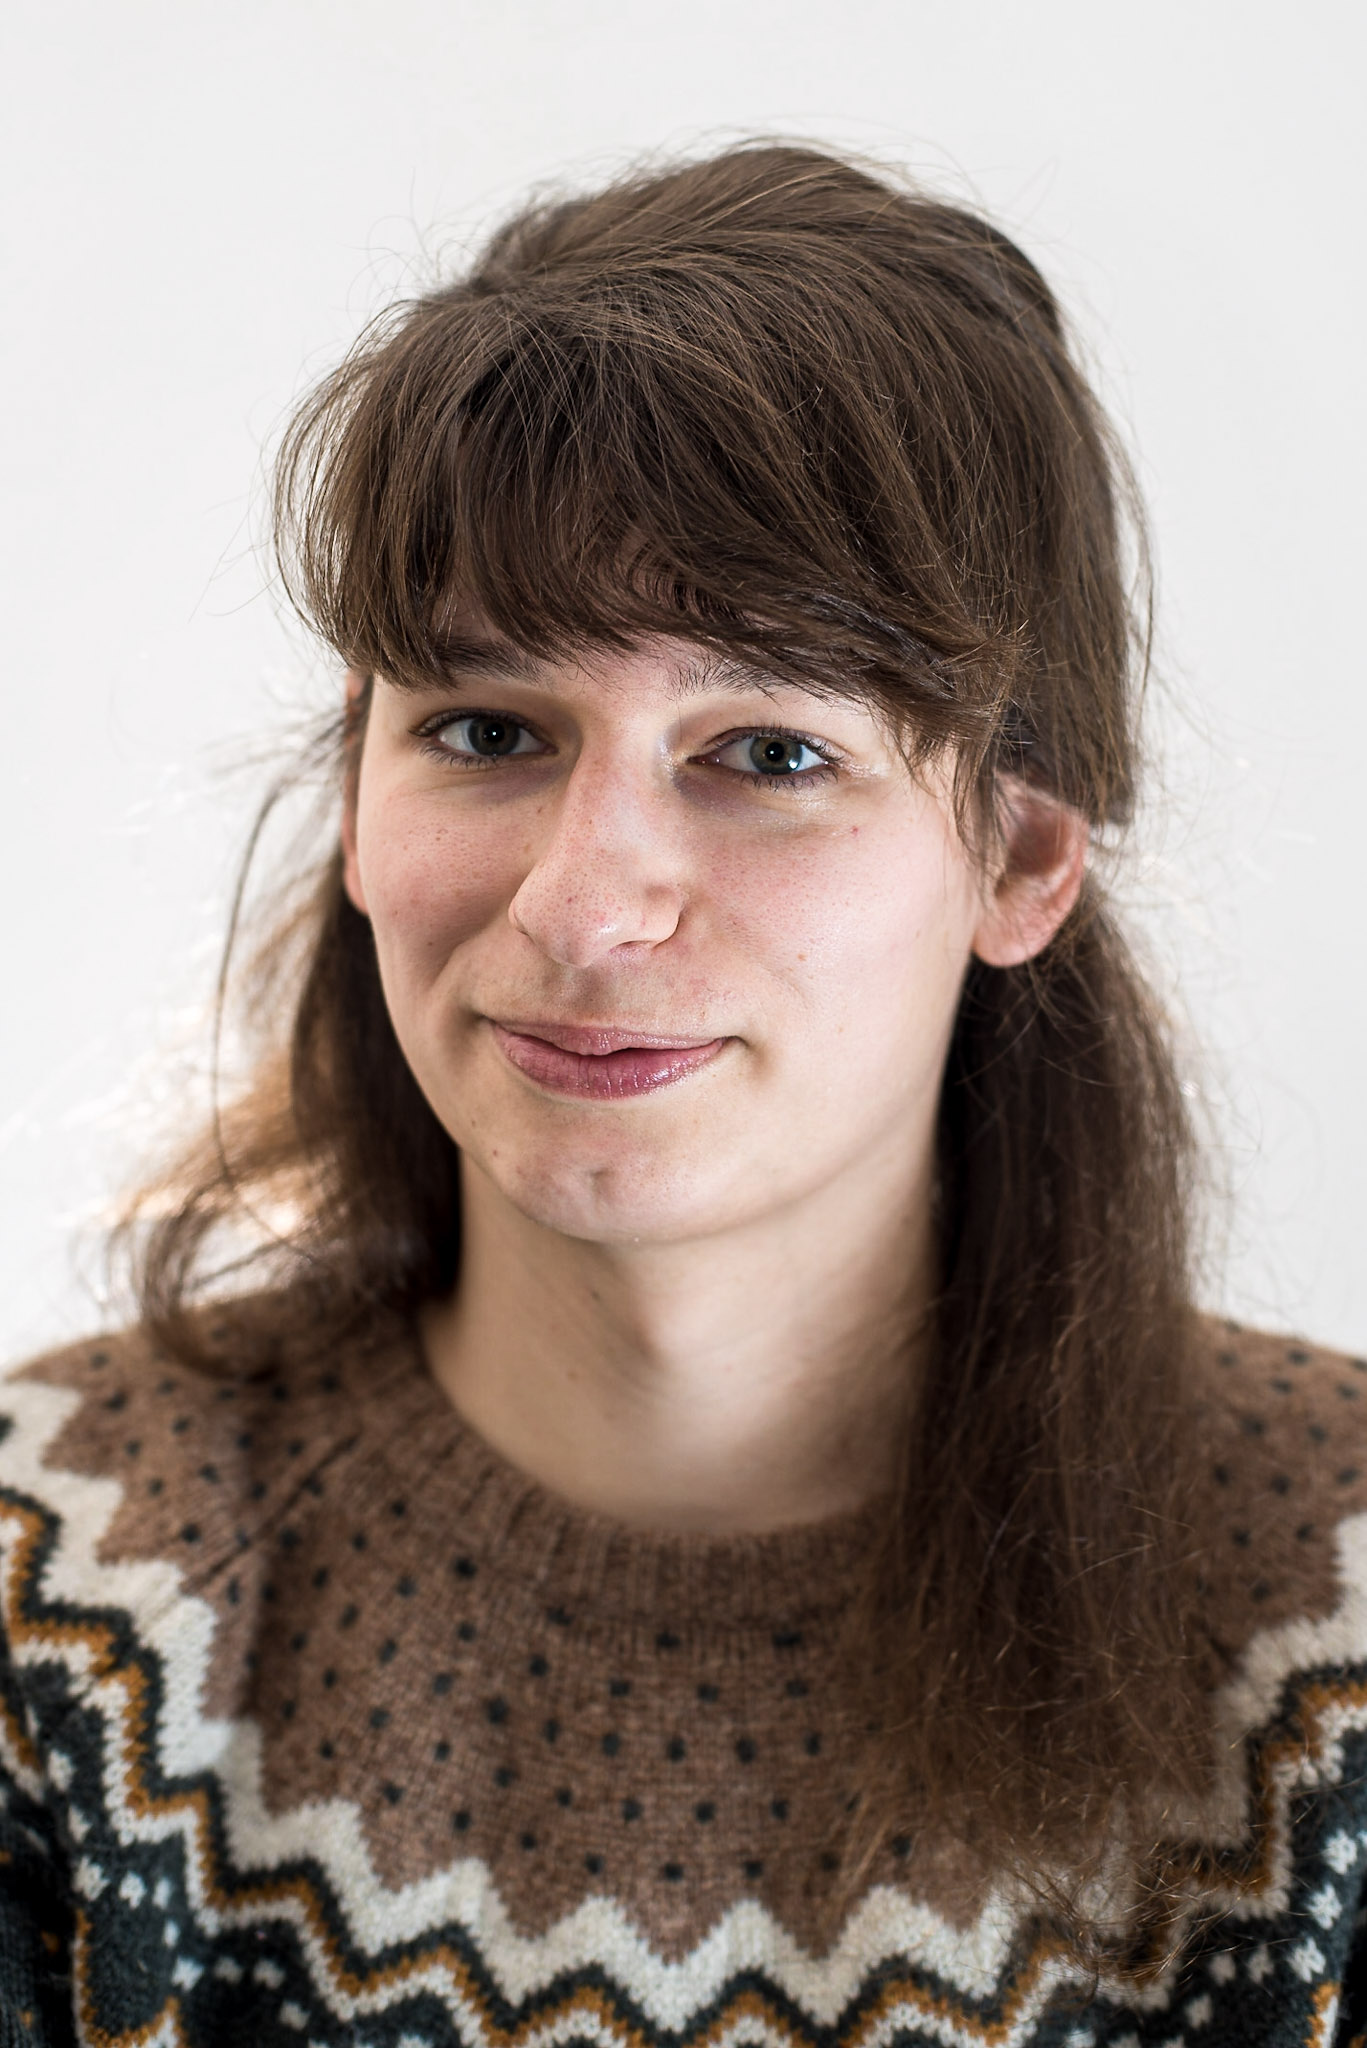 Laura Dijkhuizen, young academic/scientist at Utrecht University